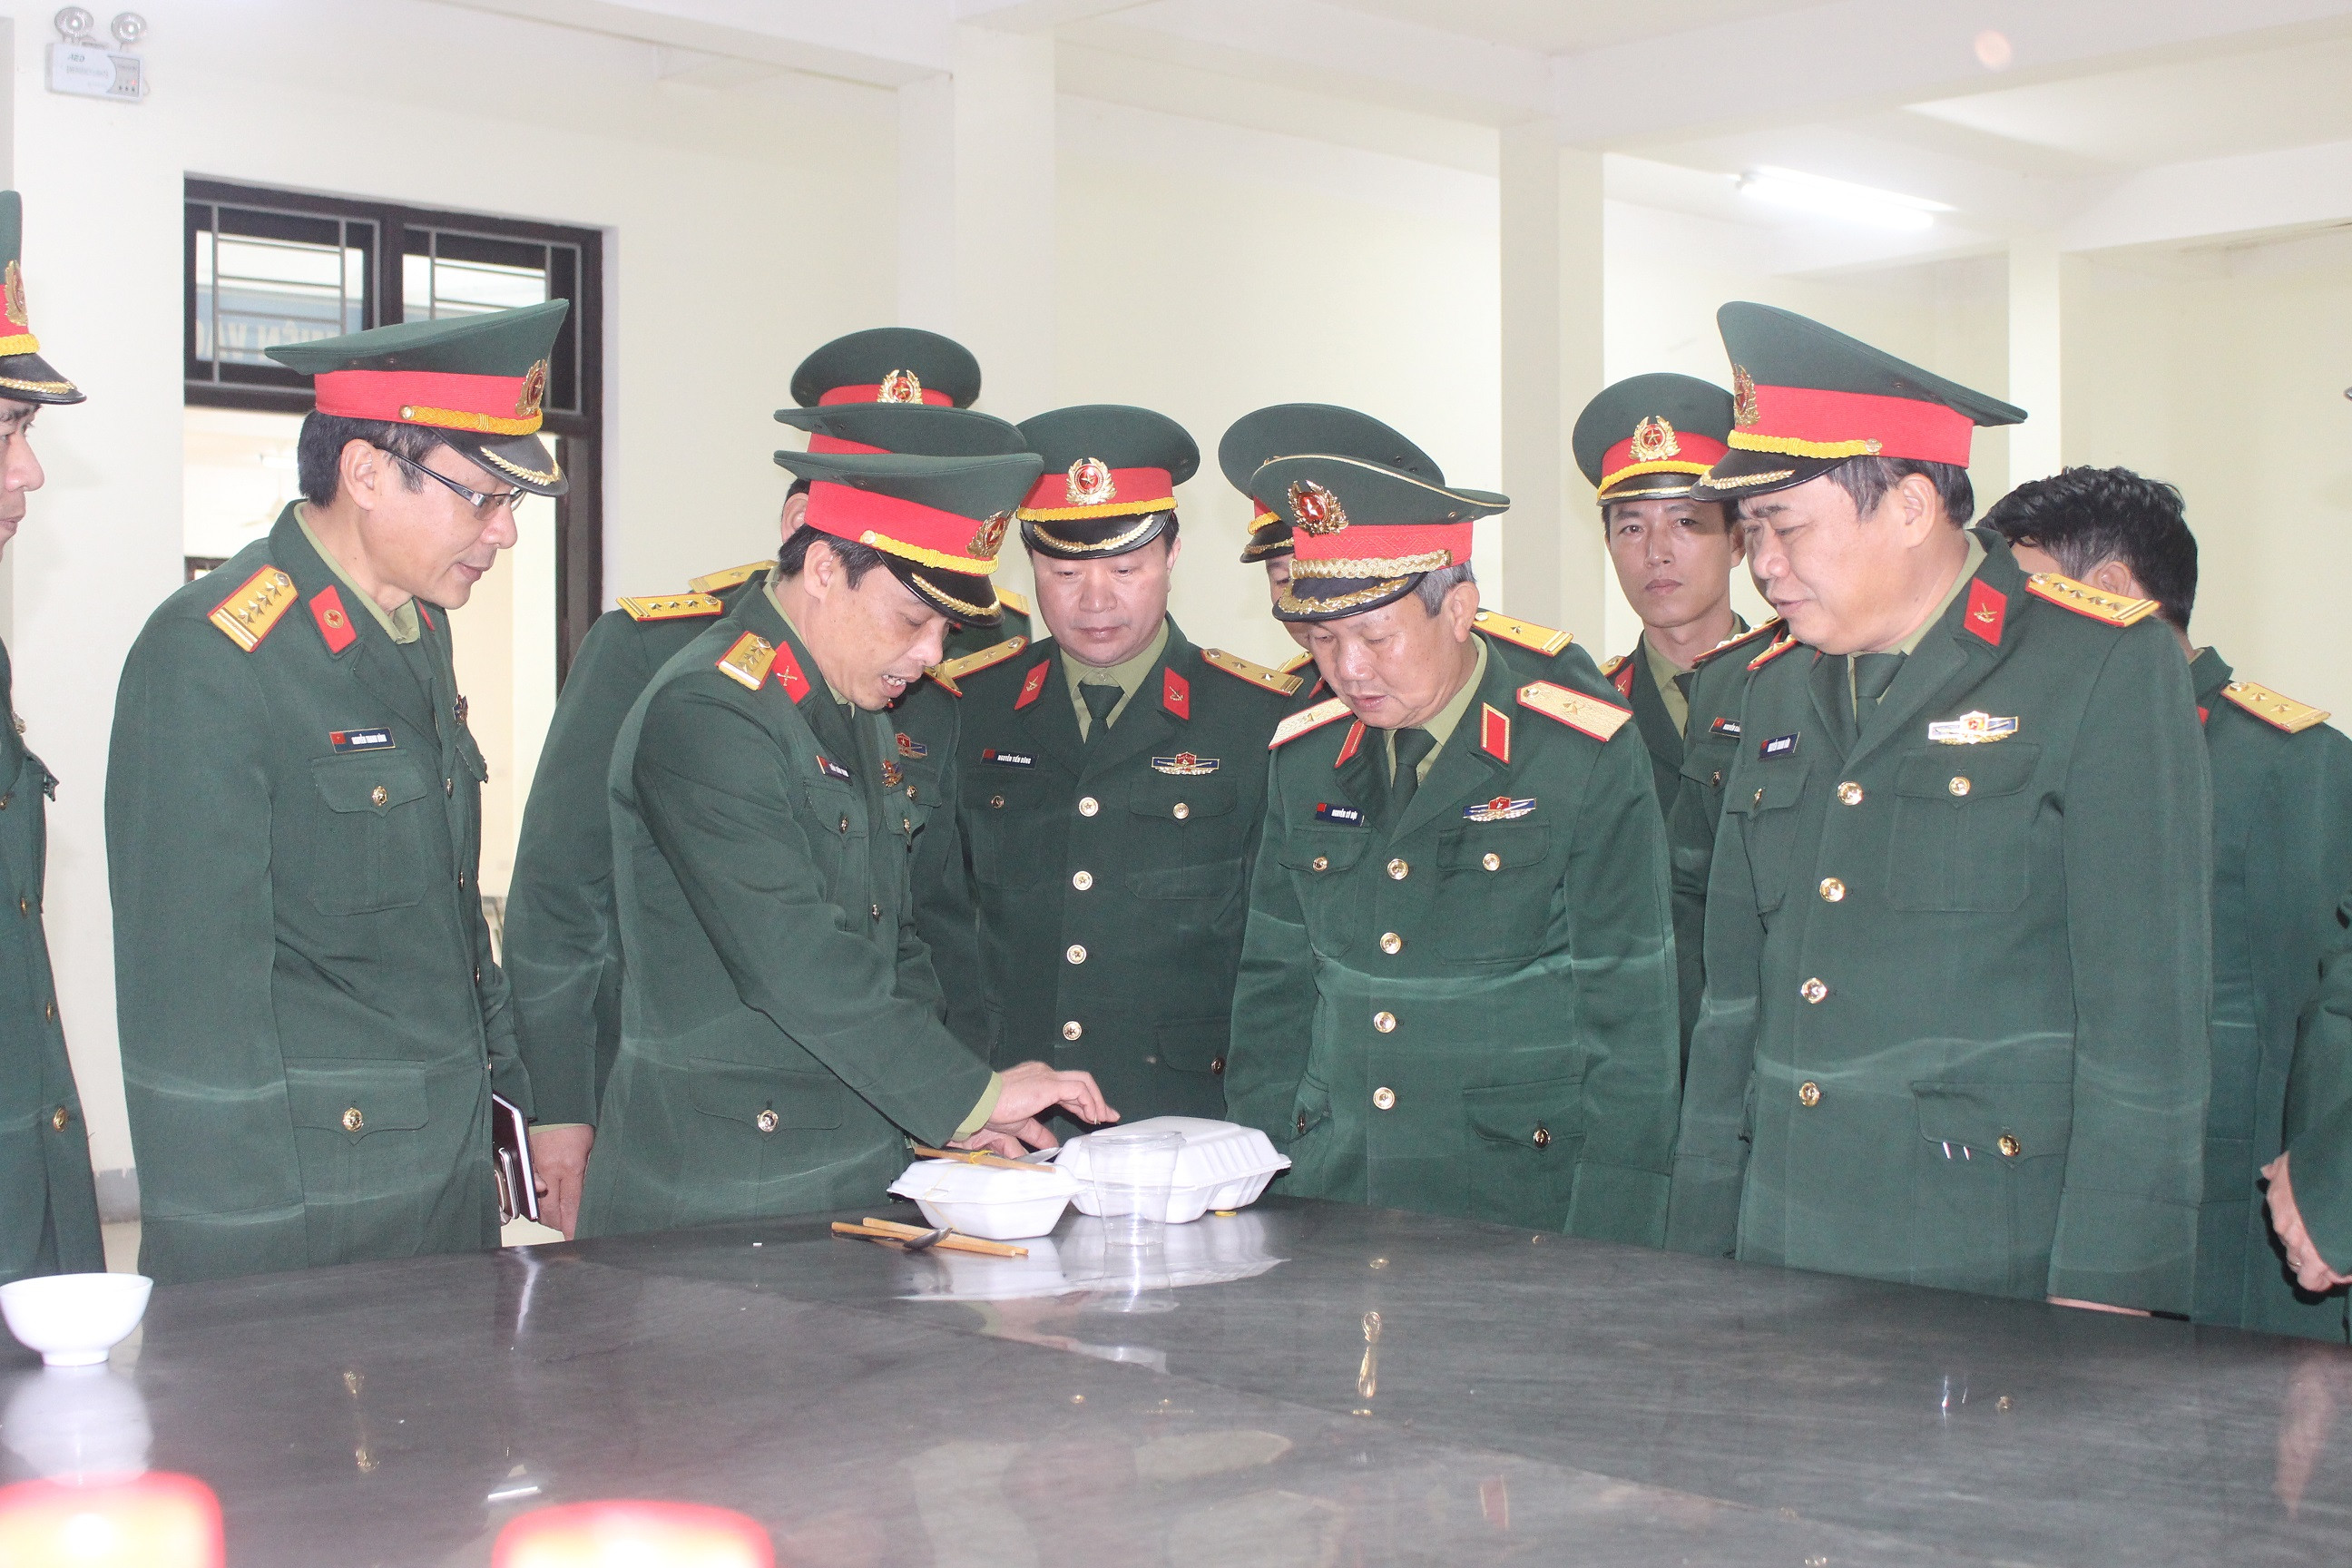 Đoàn công tác Quân khu 4 kiểm tra dụng cụ đựng thức ăn sử dụng 1 lần tại khu cách ly của Bộ CHQS tỉnh Nghệ An